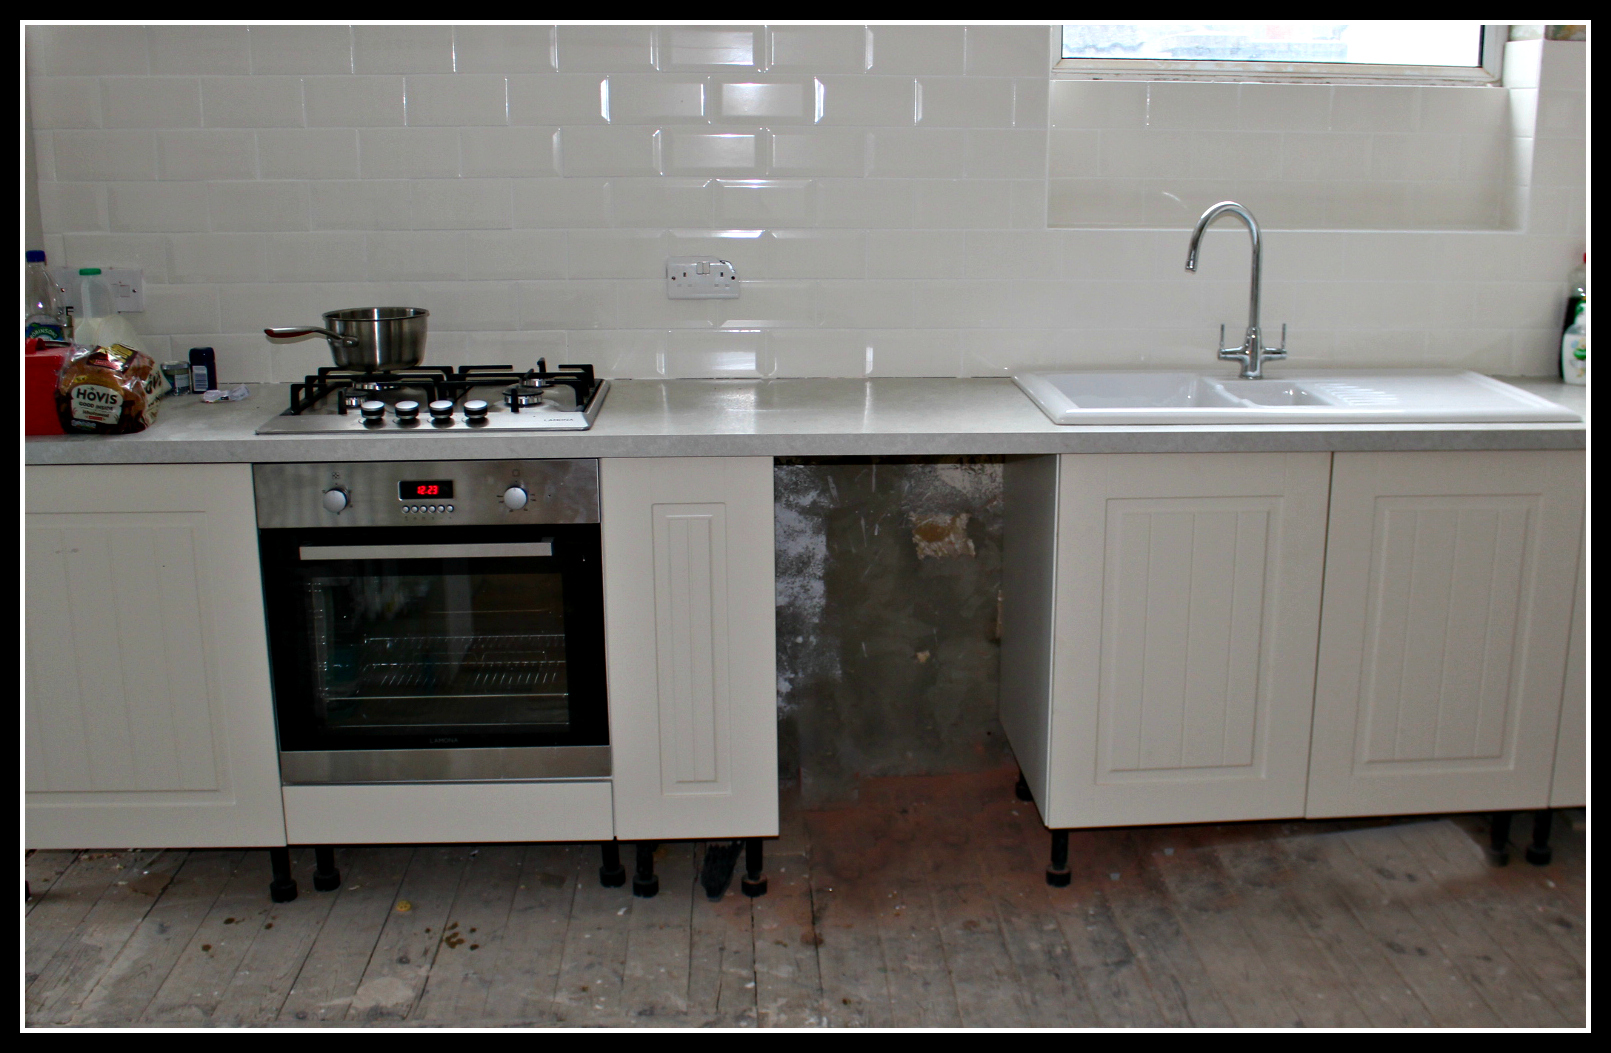 DIY, home improvement, new kitchen, hob, oven, sink, kitchen units